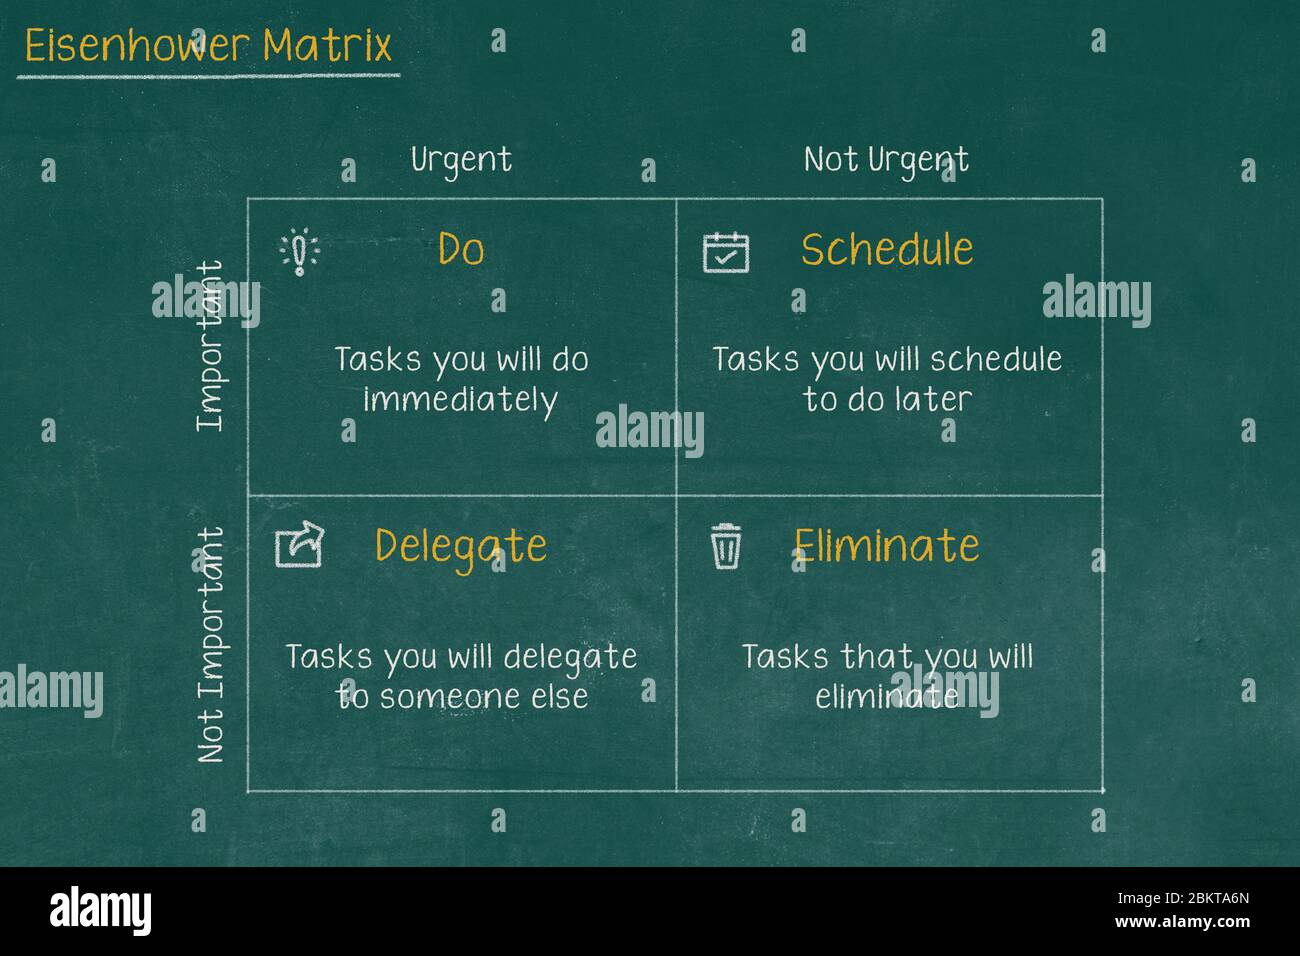 Eisenhower Matrix, dringende wichtige Matrix, Aufgabe priorisieren, Aufgabenmanagement, Projektmanagement, Prozess-Infografiken Stockfoto